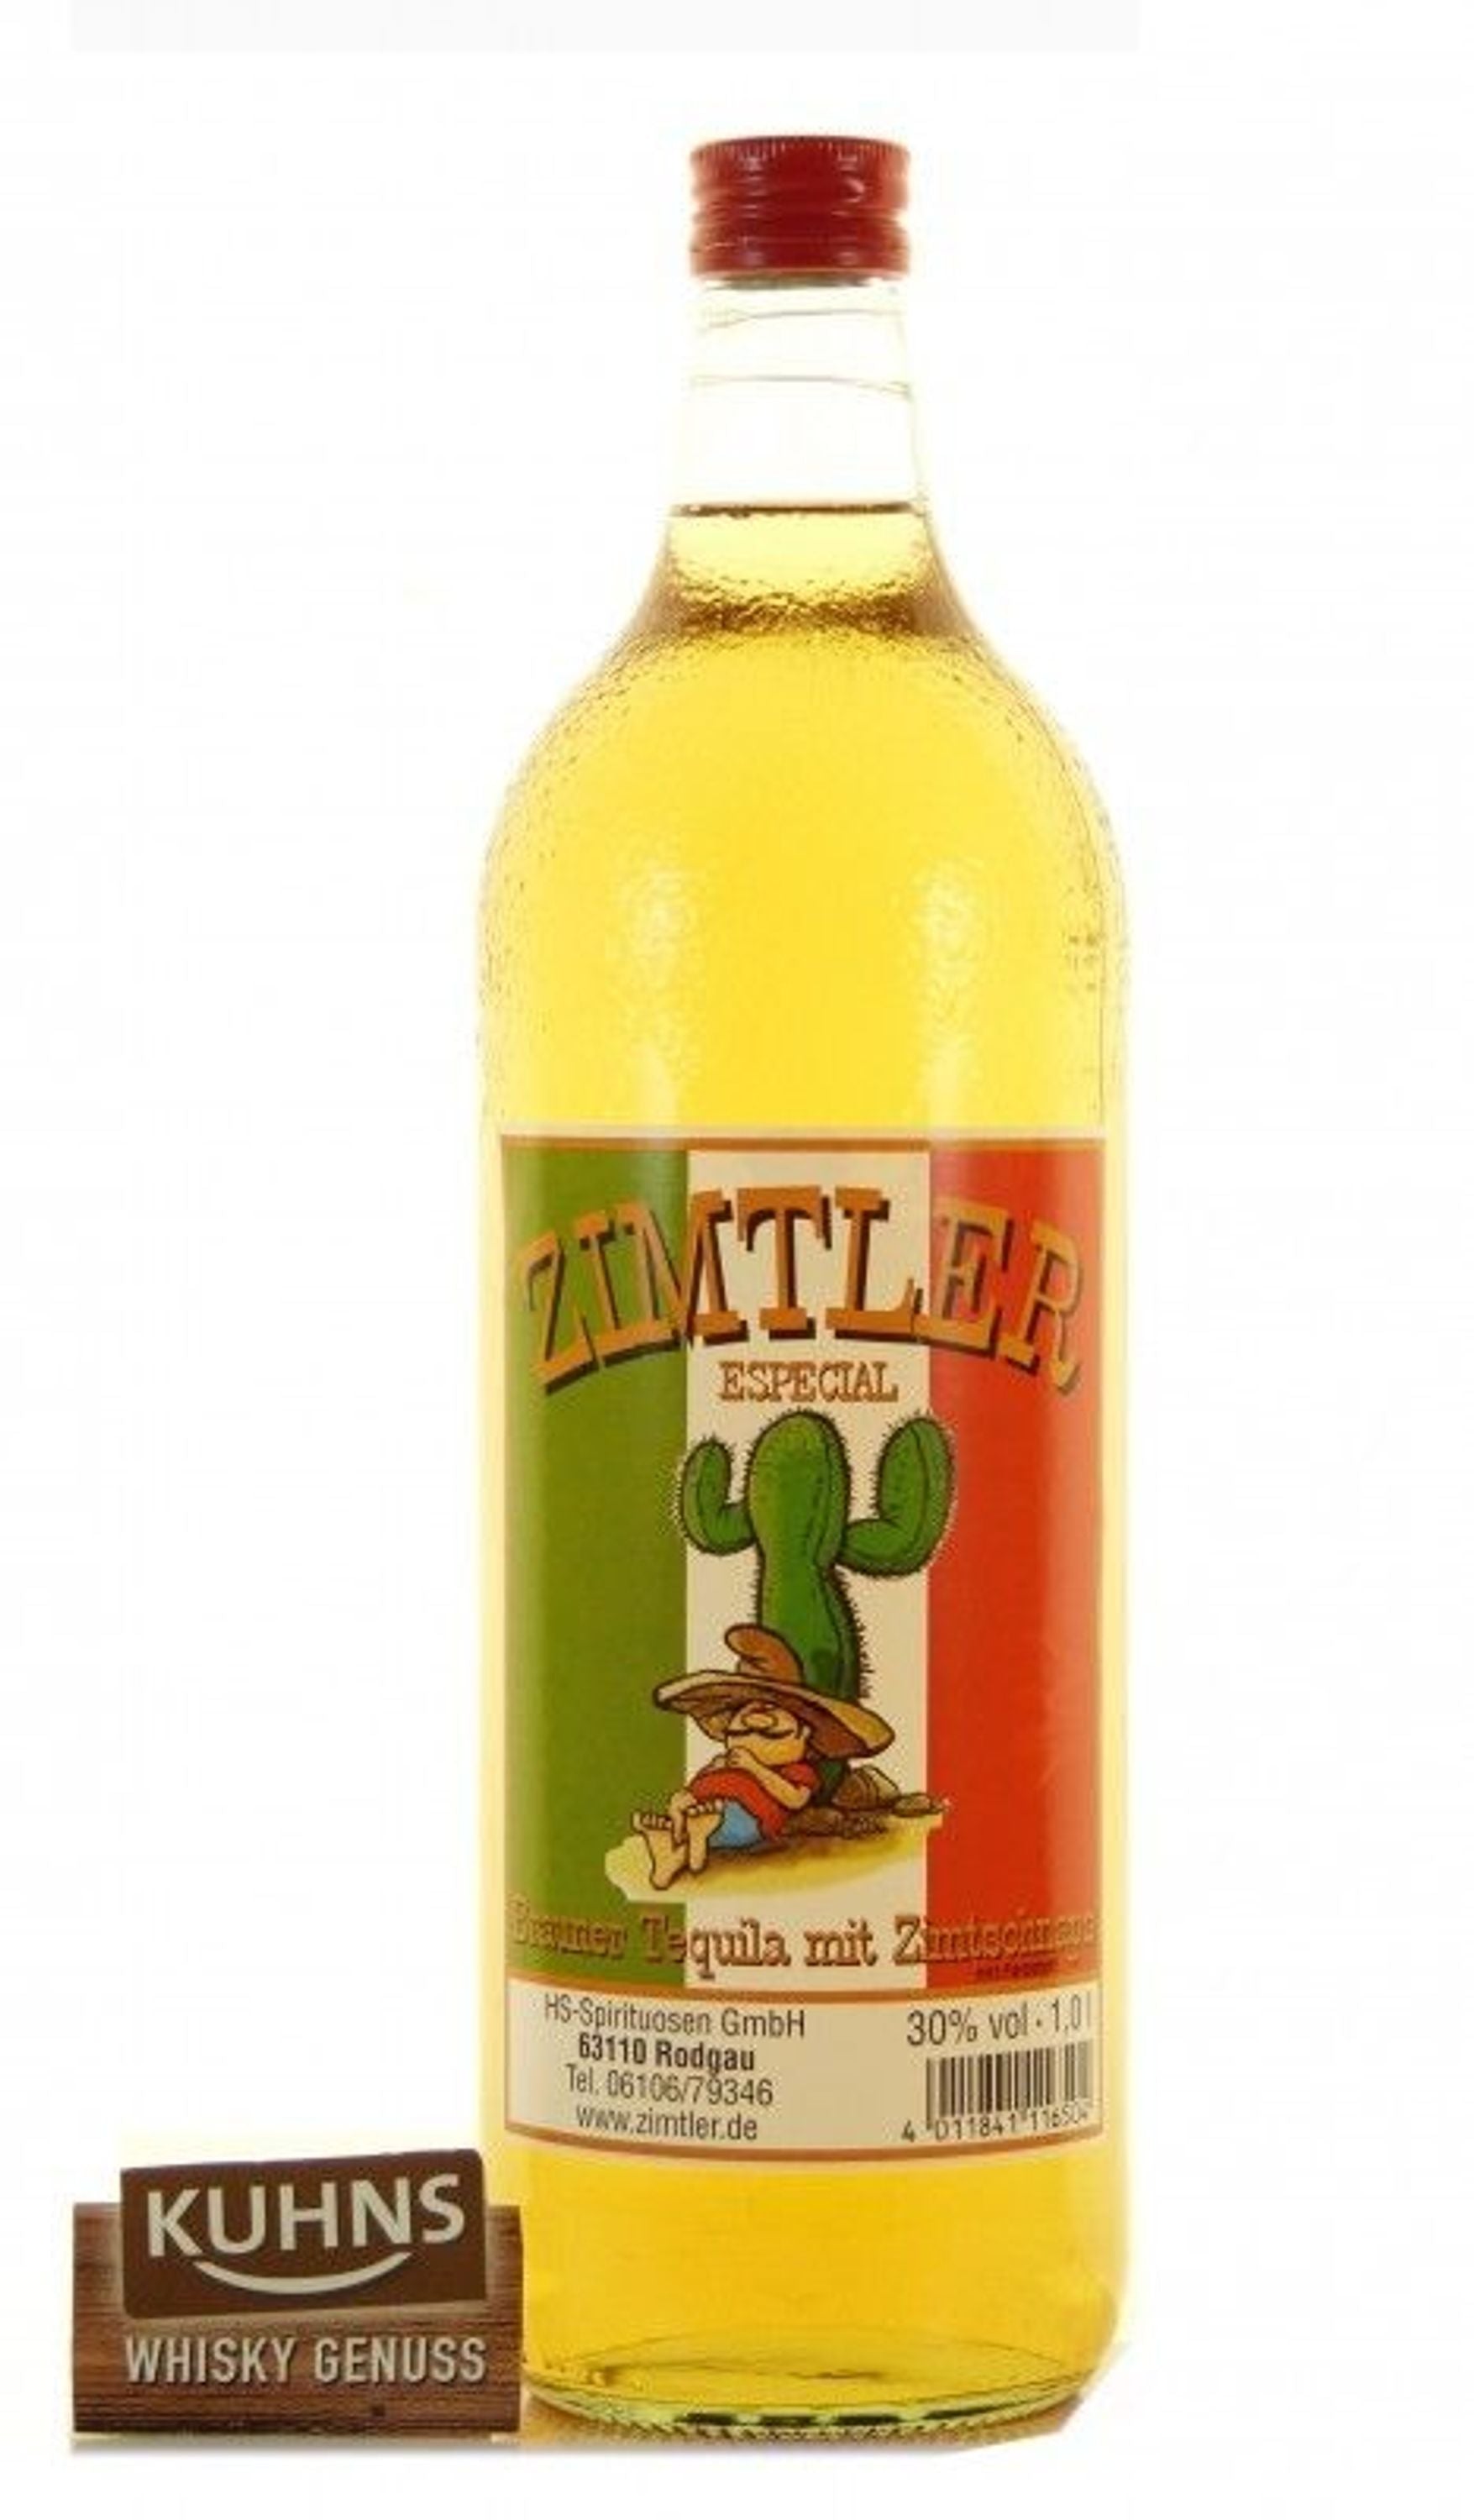 Zimtler Especial 1,0l, alc. 30 Vol.-%, Tequila/Zimtschnaps Deutschland